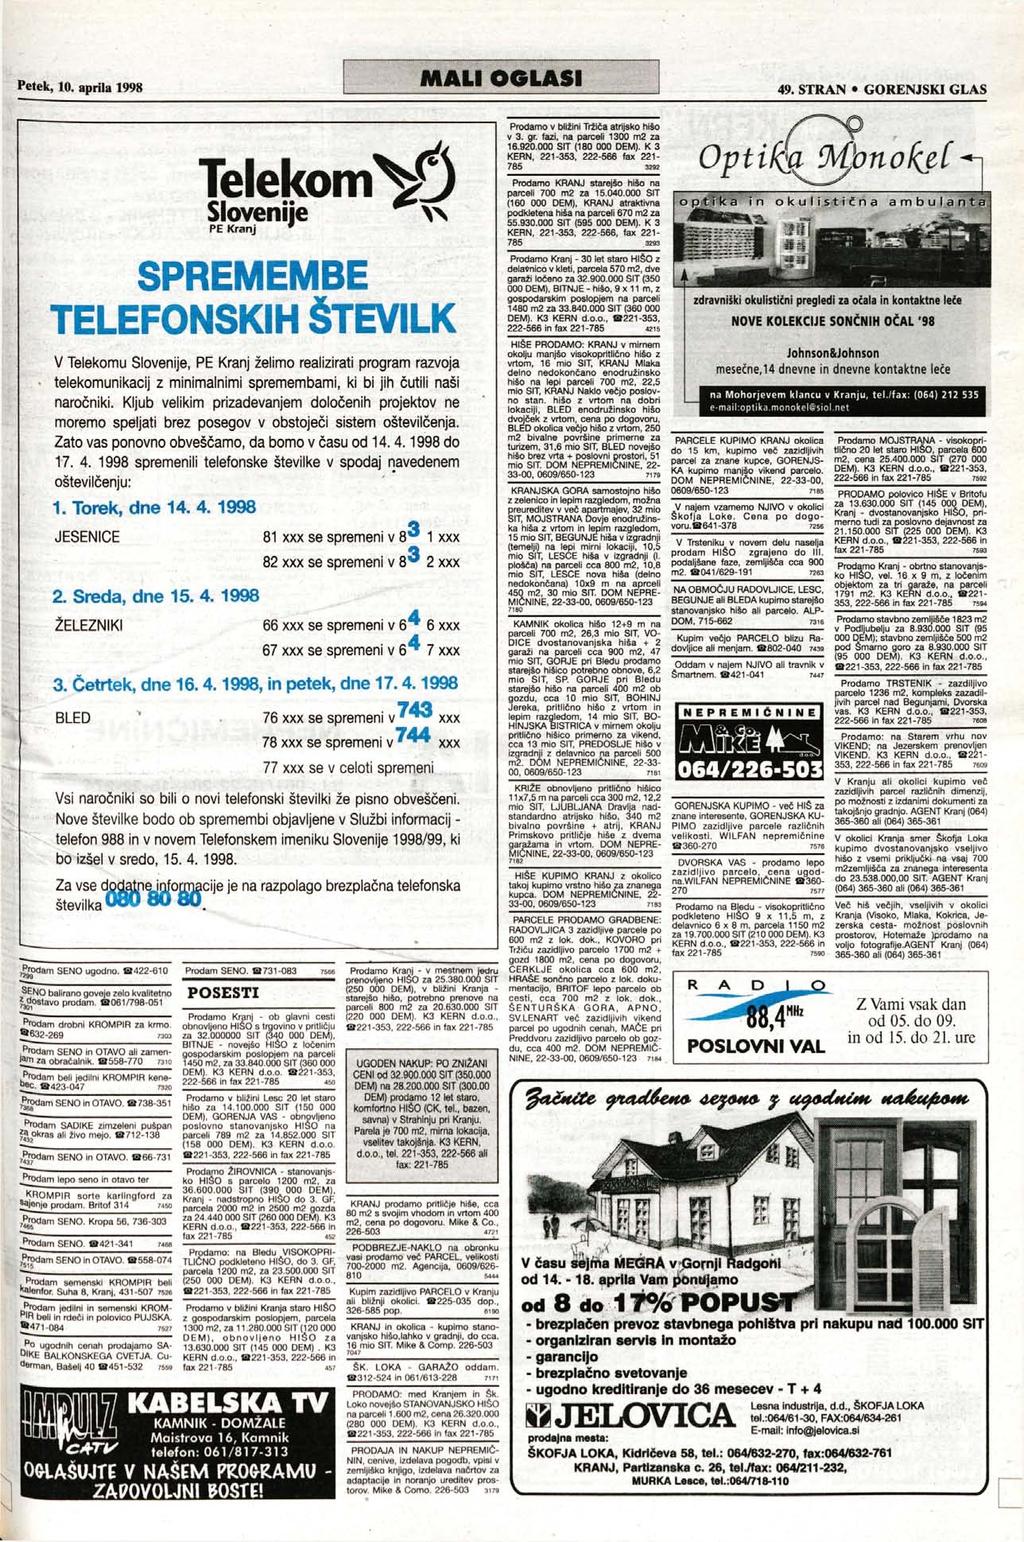 Telekom V3 Slovenije Slovenije # PE Kranj w Prodamo v bližini Tržiča atrijsko hišo v 3. gr. fazi, na parceli 1300 m2 za 16.920.000 SIT (180 000 DEM).